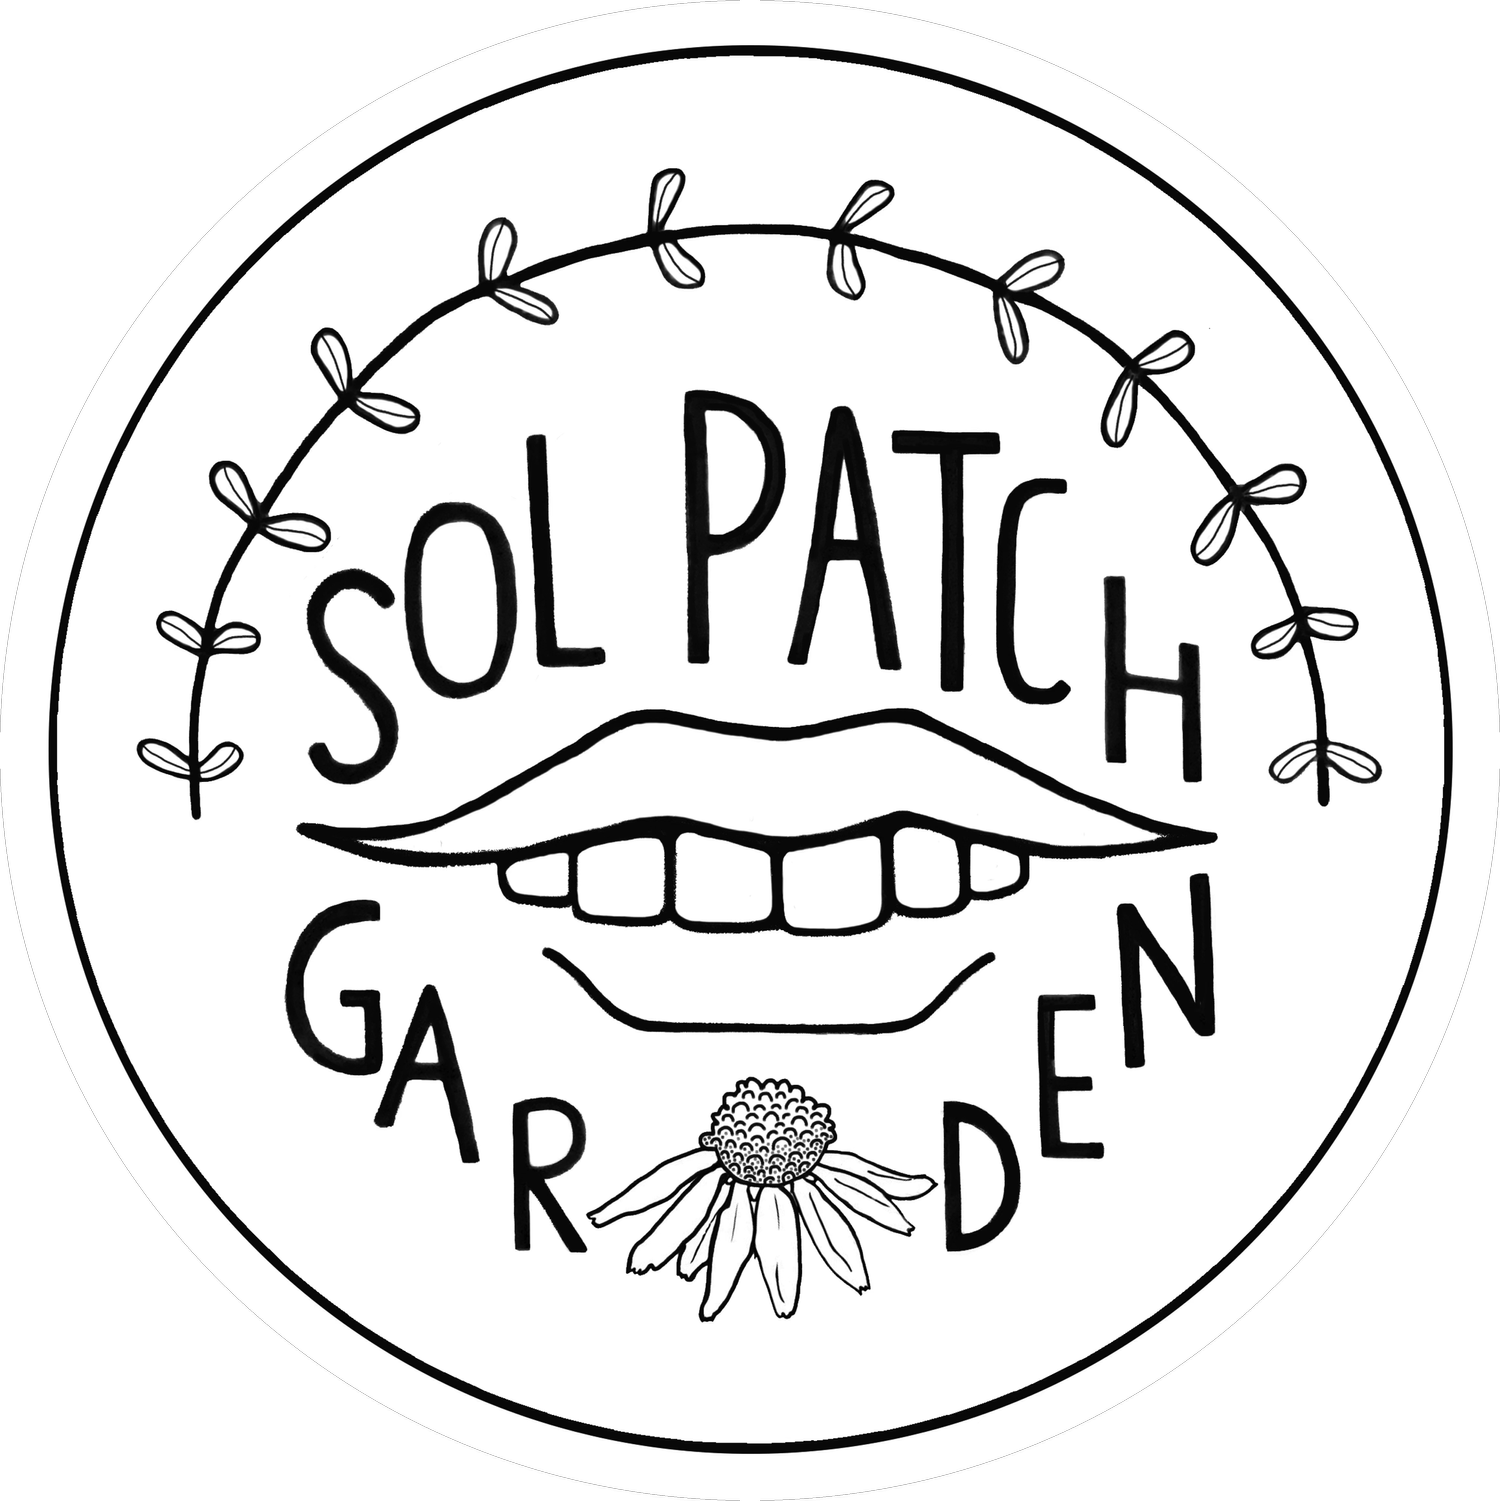 Sol Patch Garden